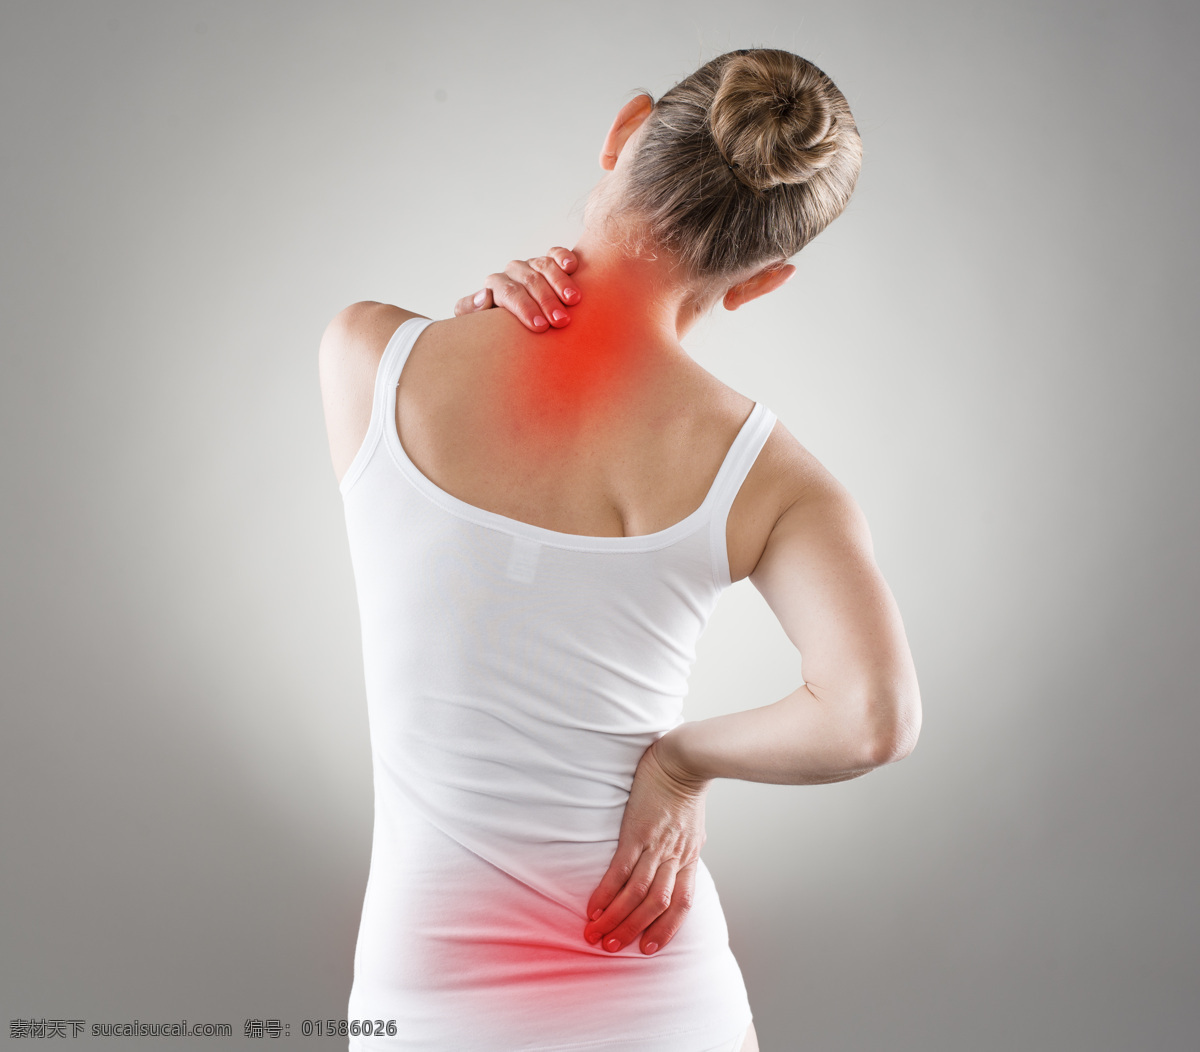 腰痛 女人 腰痛的女人 受伤 骨折 身体红肿 医疗护理 生病 生理疾病 受伤人物 美女 现代科技